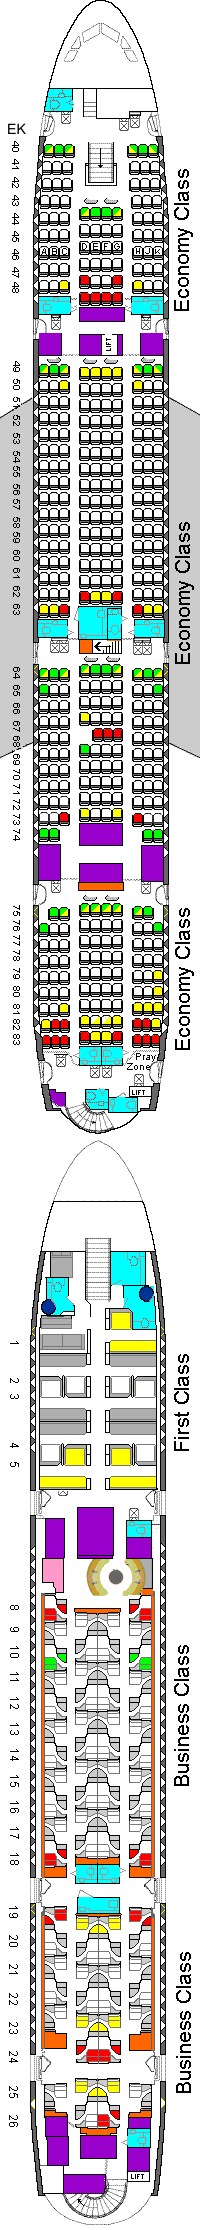 Etihad A380 seating plan